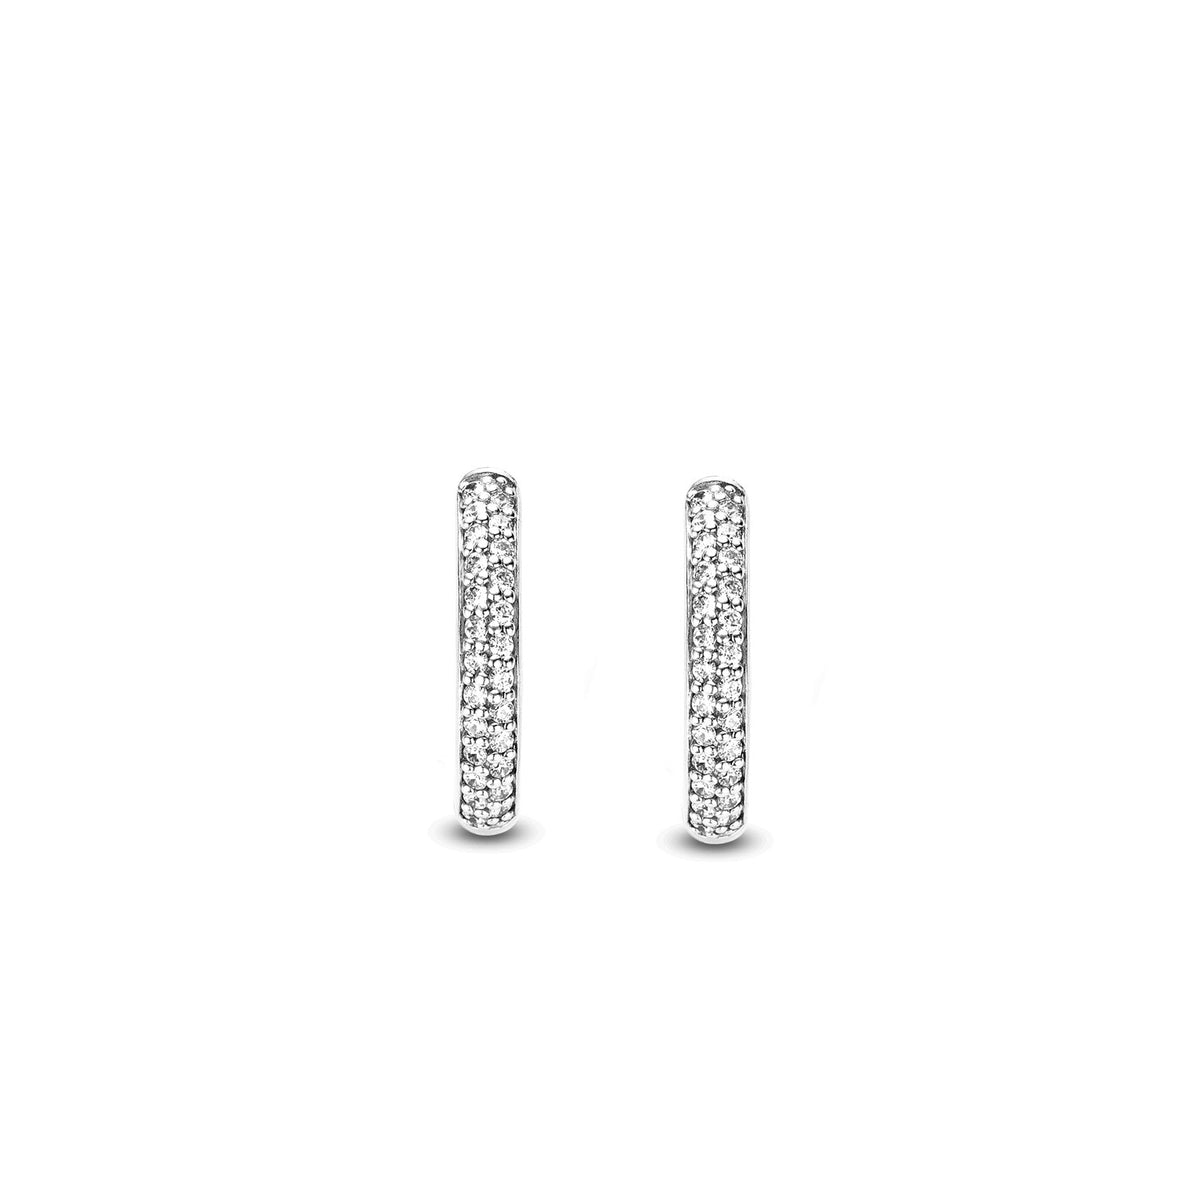 TI SENTO Sterling Silver Medium Hoop Huggie Earrings with Cubic Zirconia